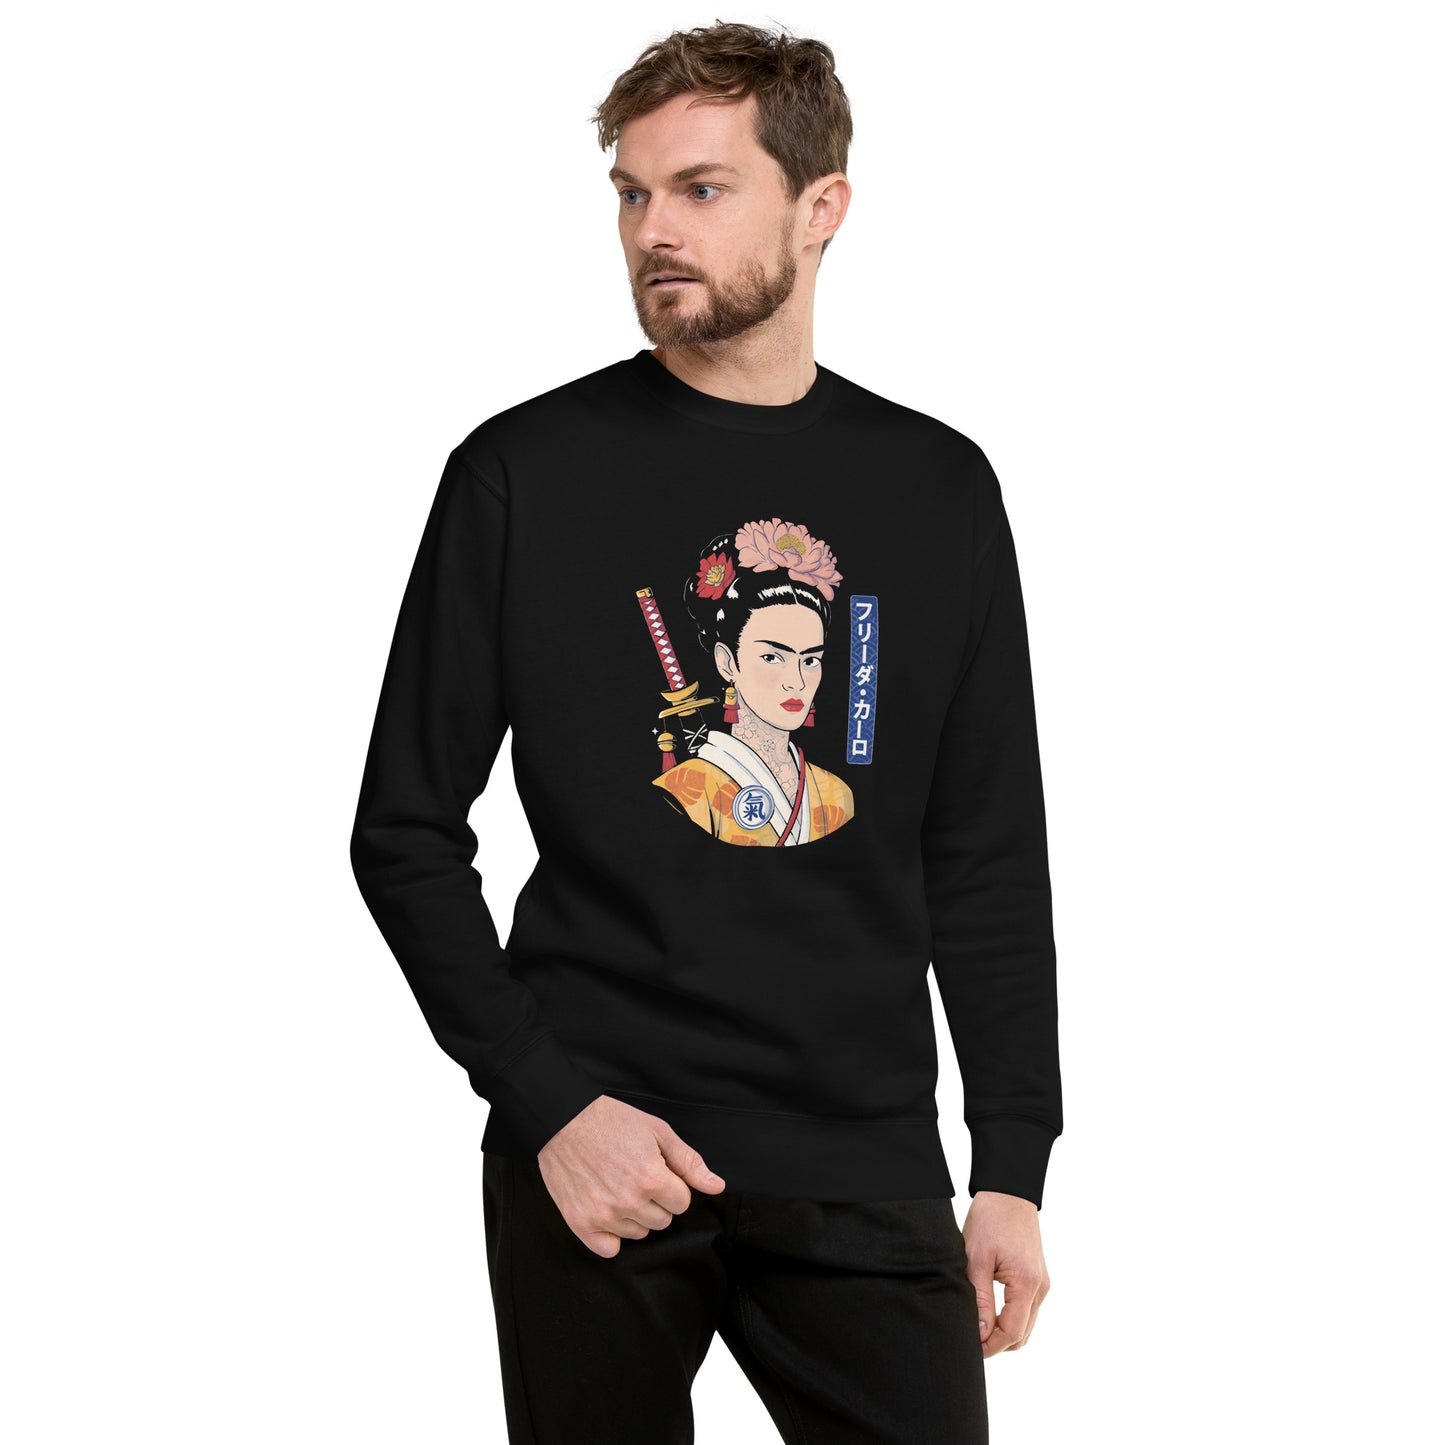 Suéter de Frida Samurai ,Descubre calidad excepcional y estampados duraderos. Encuentra estilo y orgullo en cada prenda. Compra ahora!